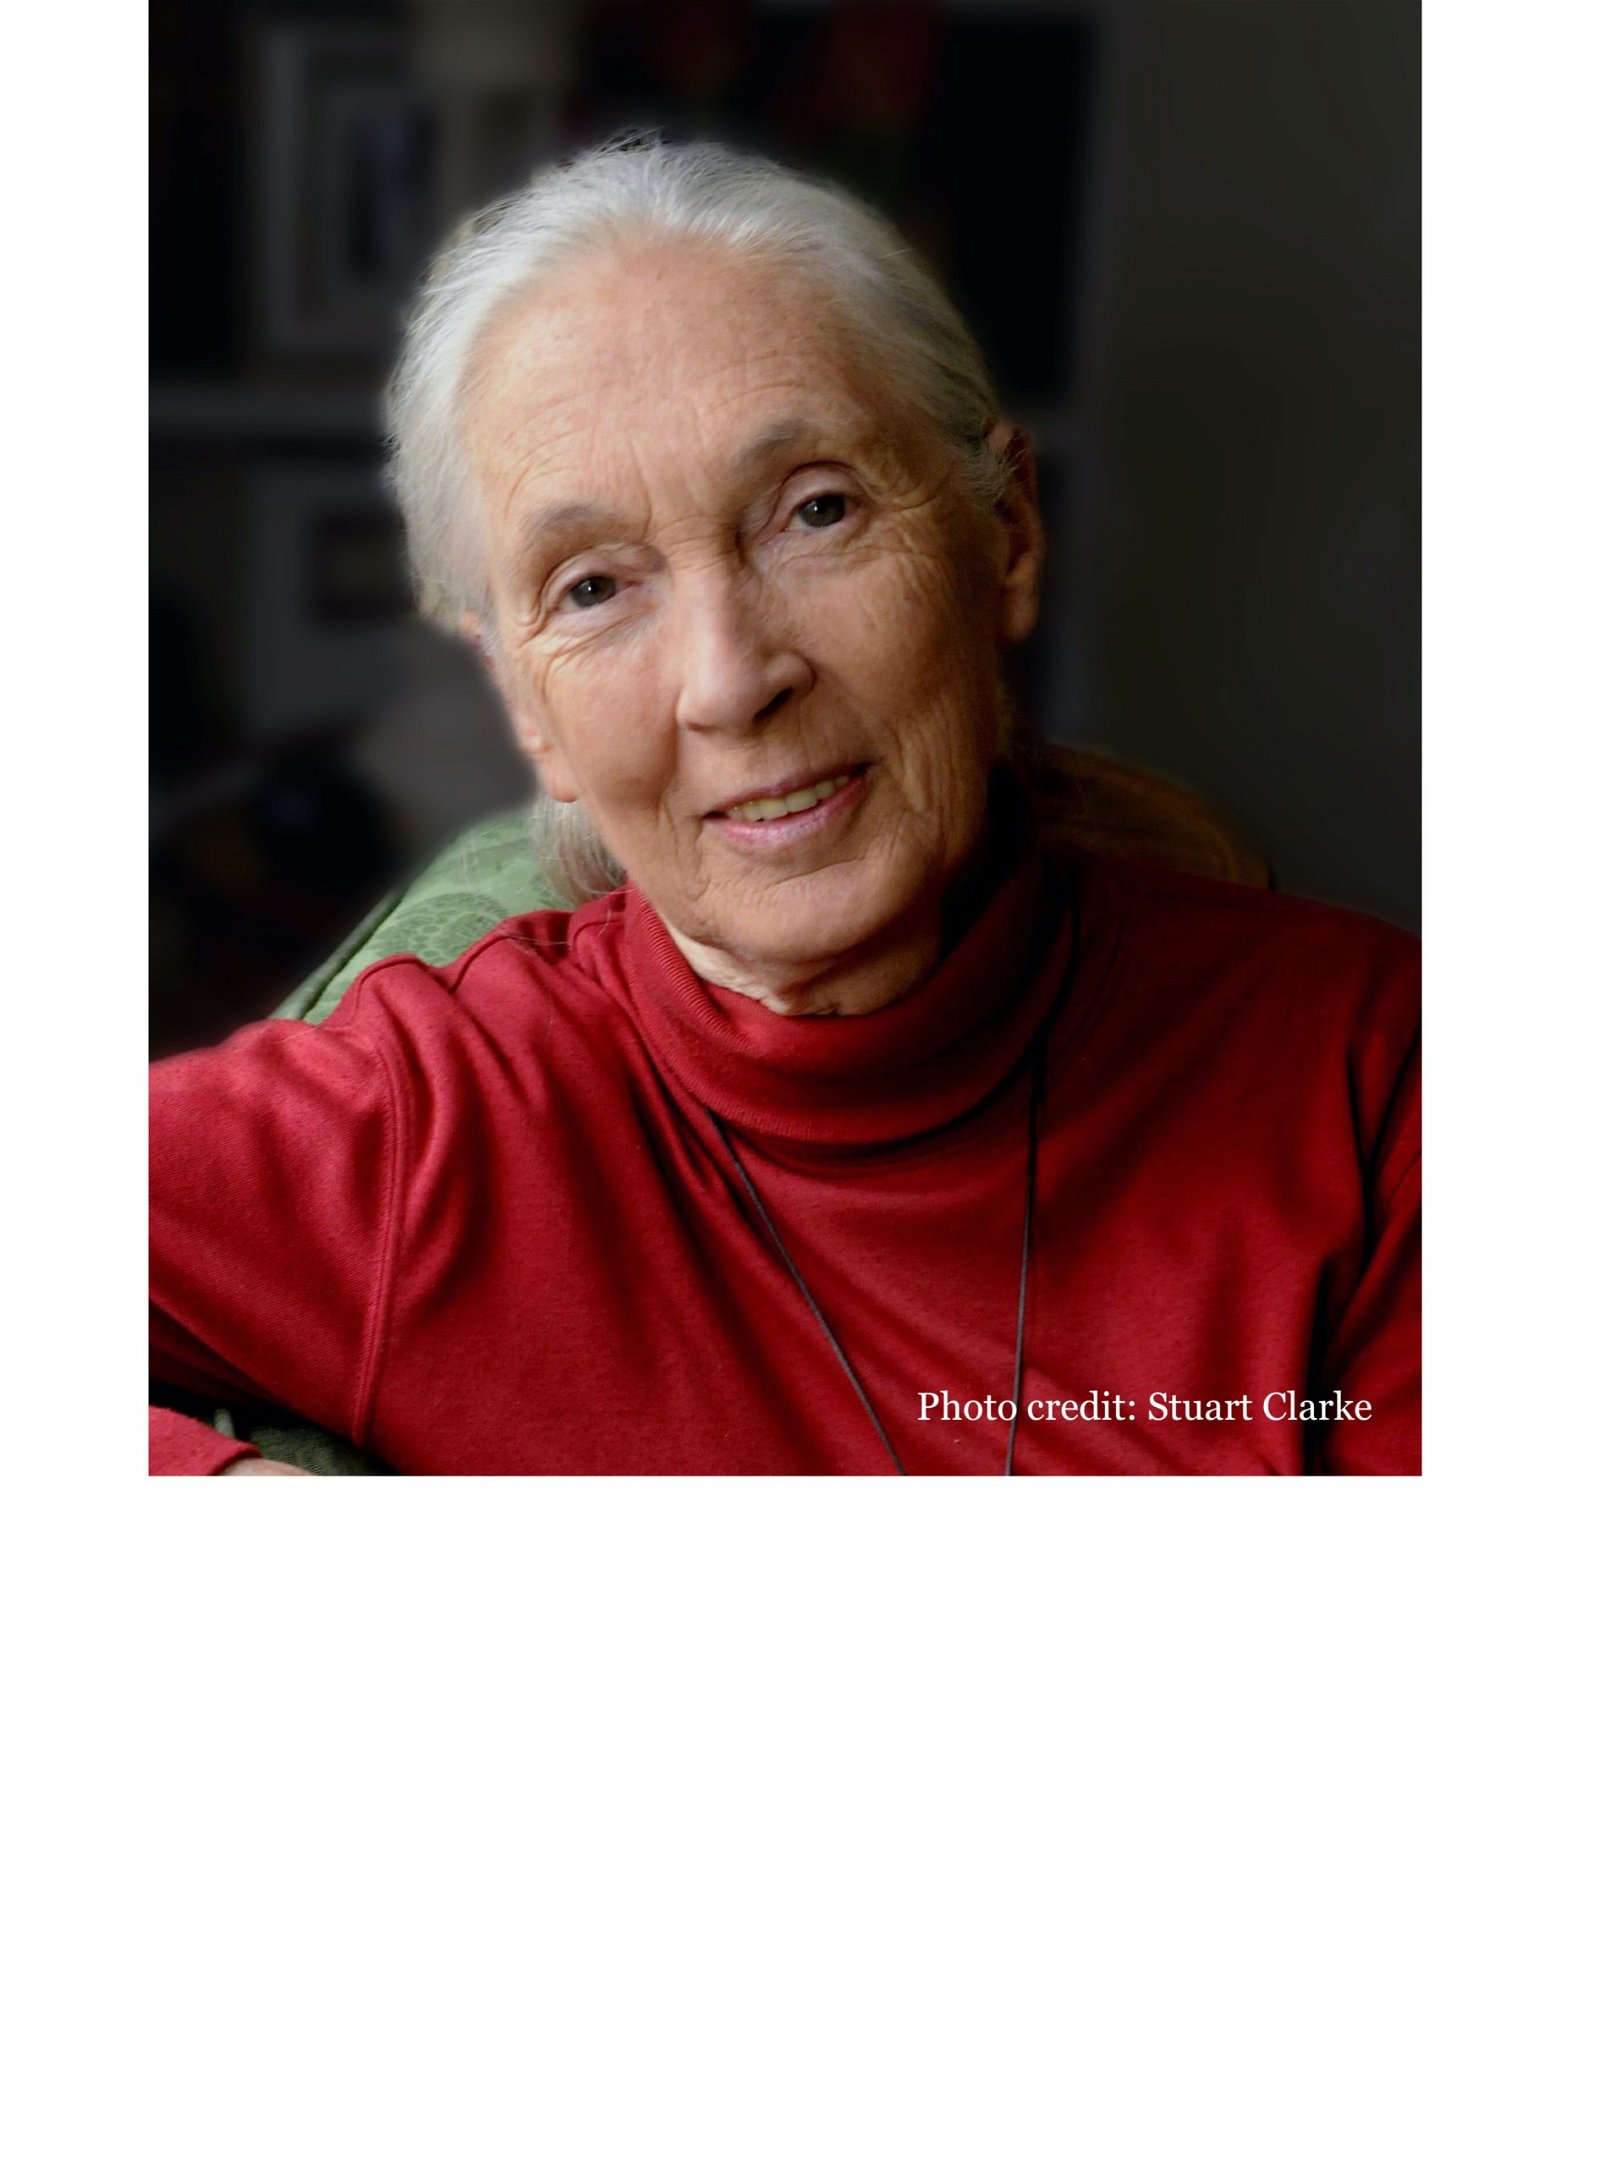 Jane Goodall Speaker